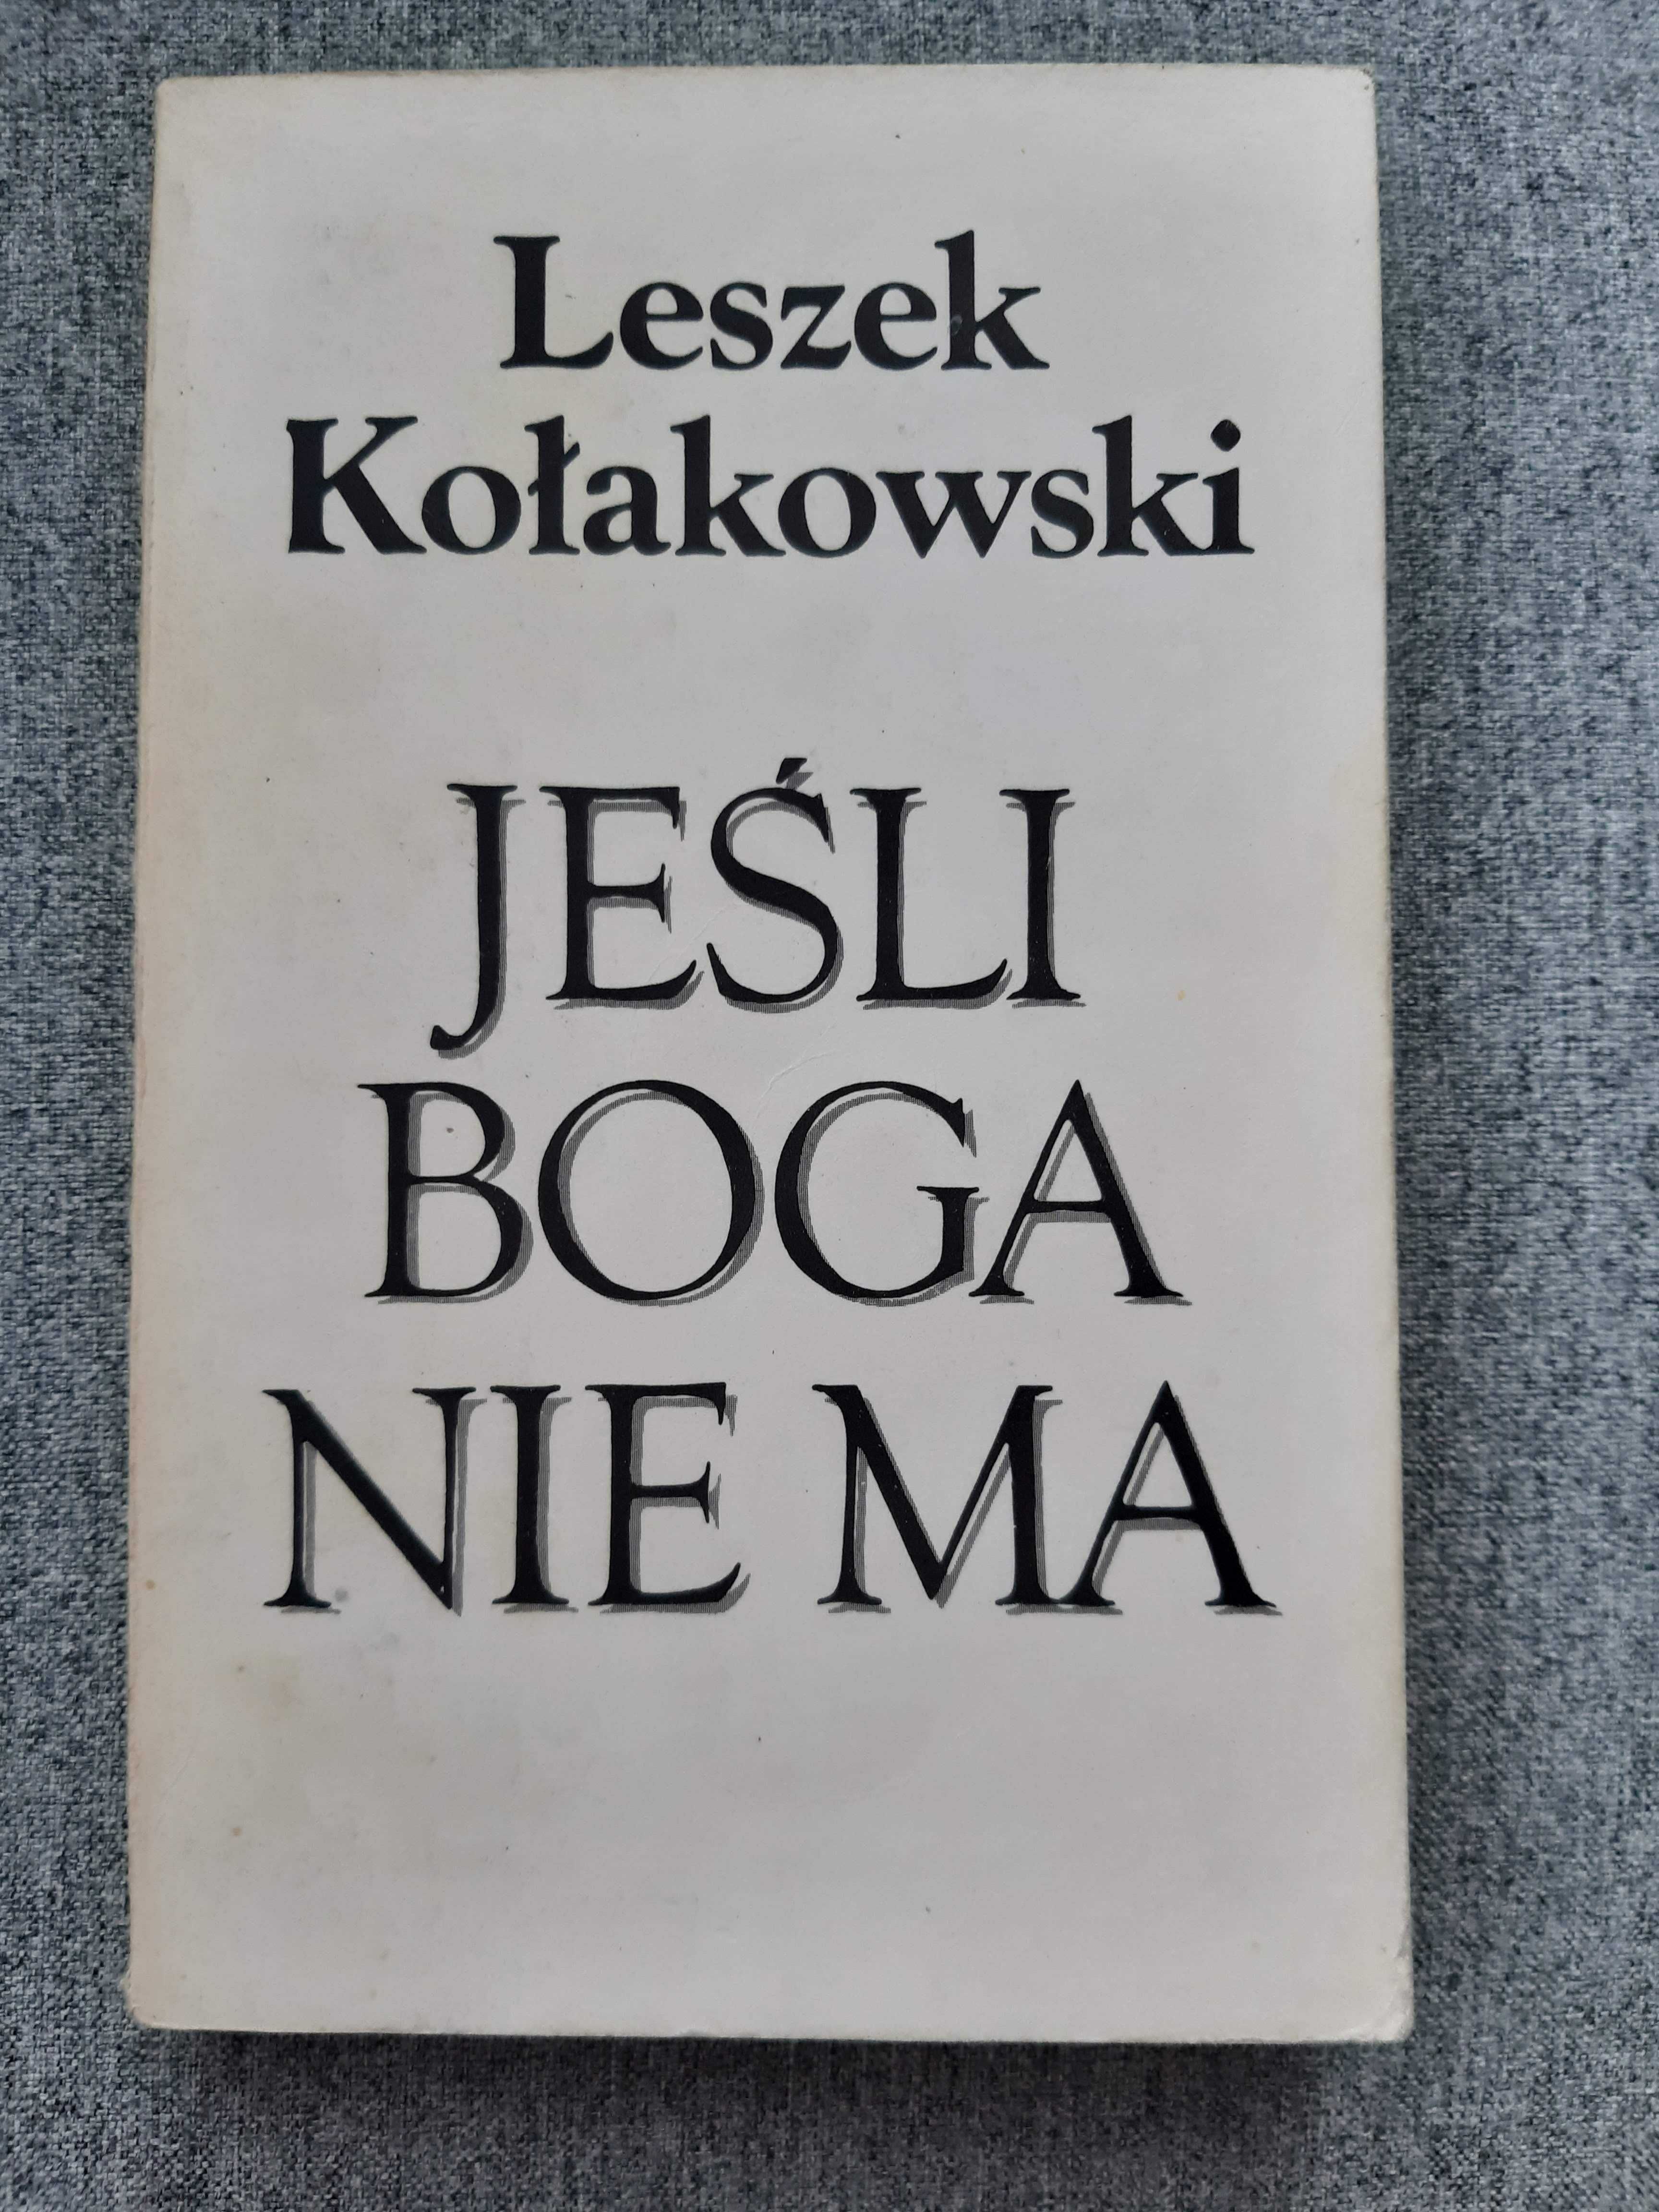 książka "Jeśli Boga nie ma" - Leszek Kołakowski - stan bardzo dobry